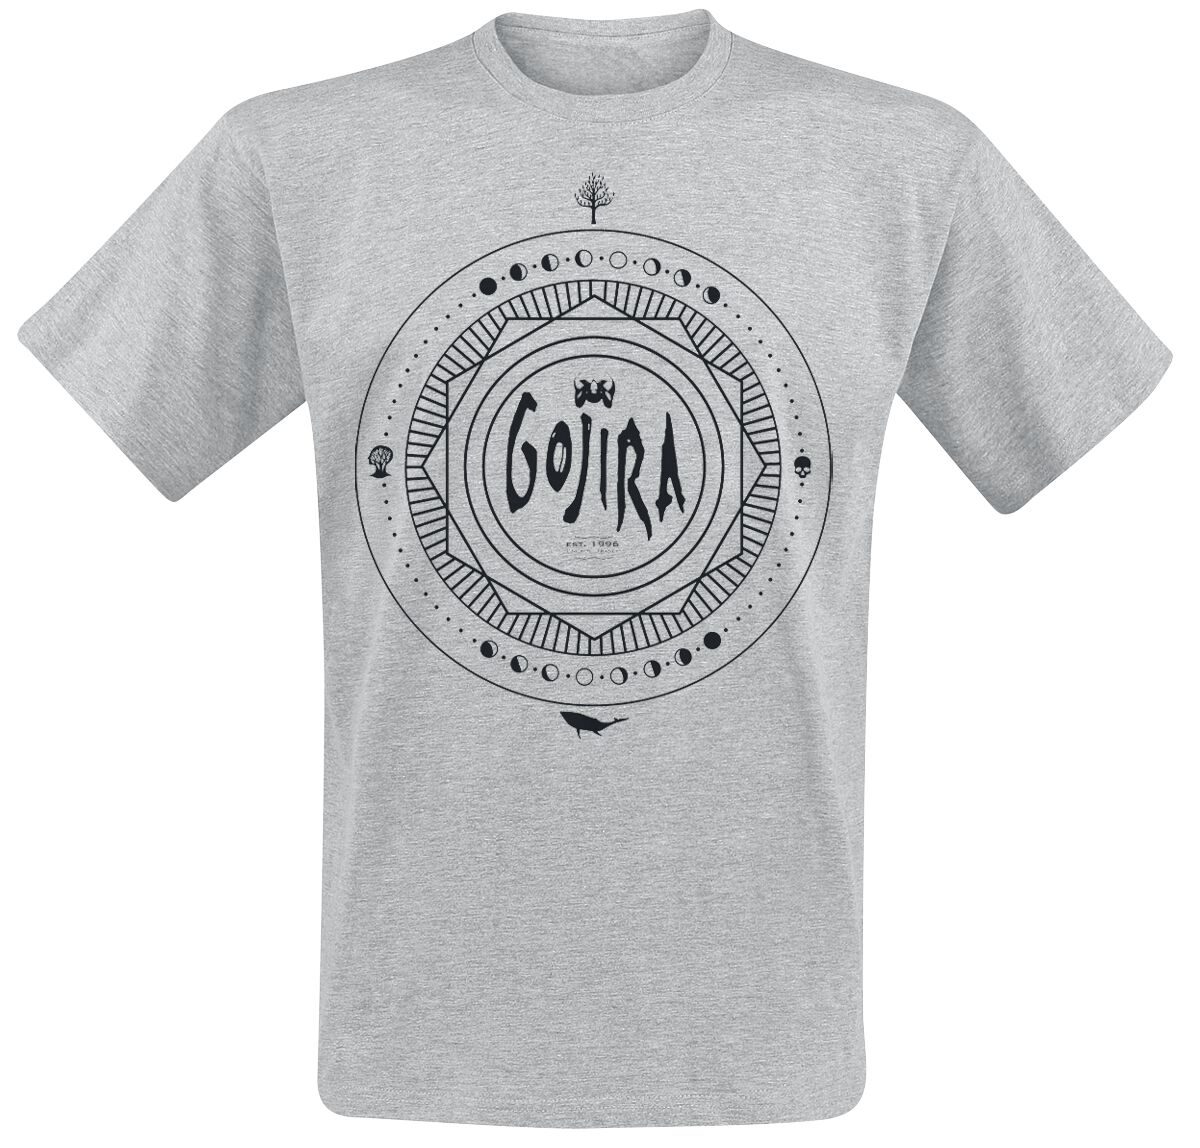 Gojira T-Shirt - Moon Phases - S bis XL - für Männer - Größe M - grau meliert  - Lizenziertes Merchandise!